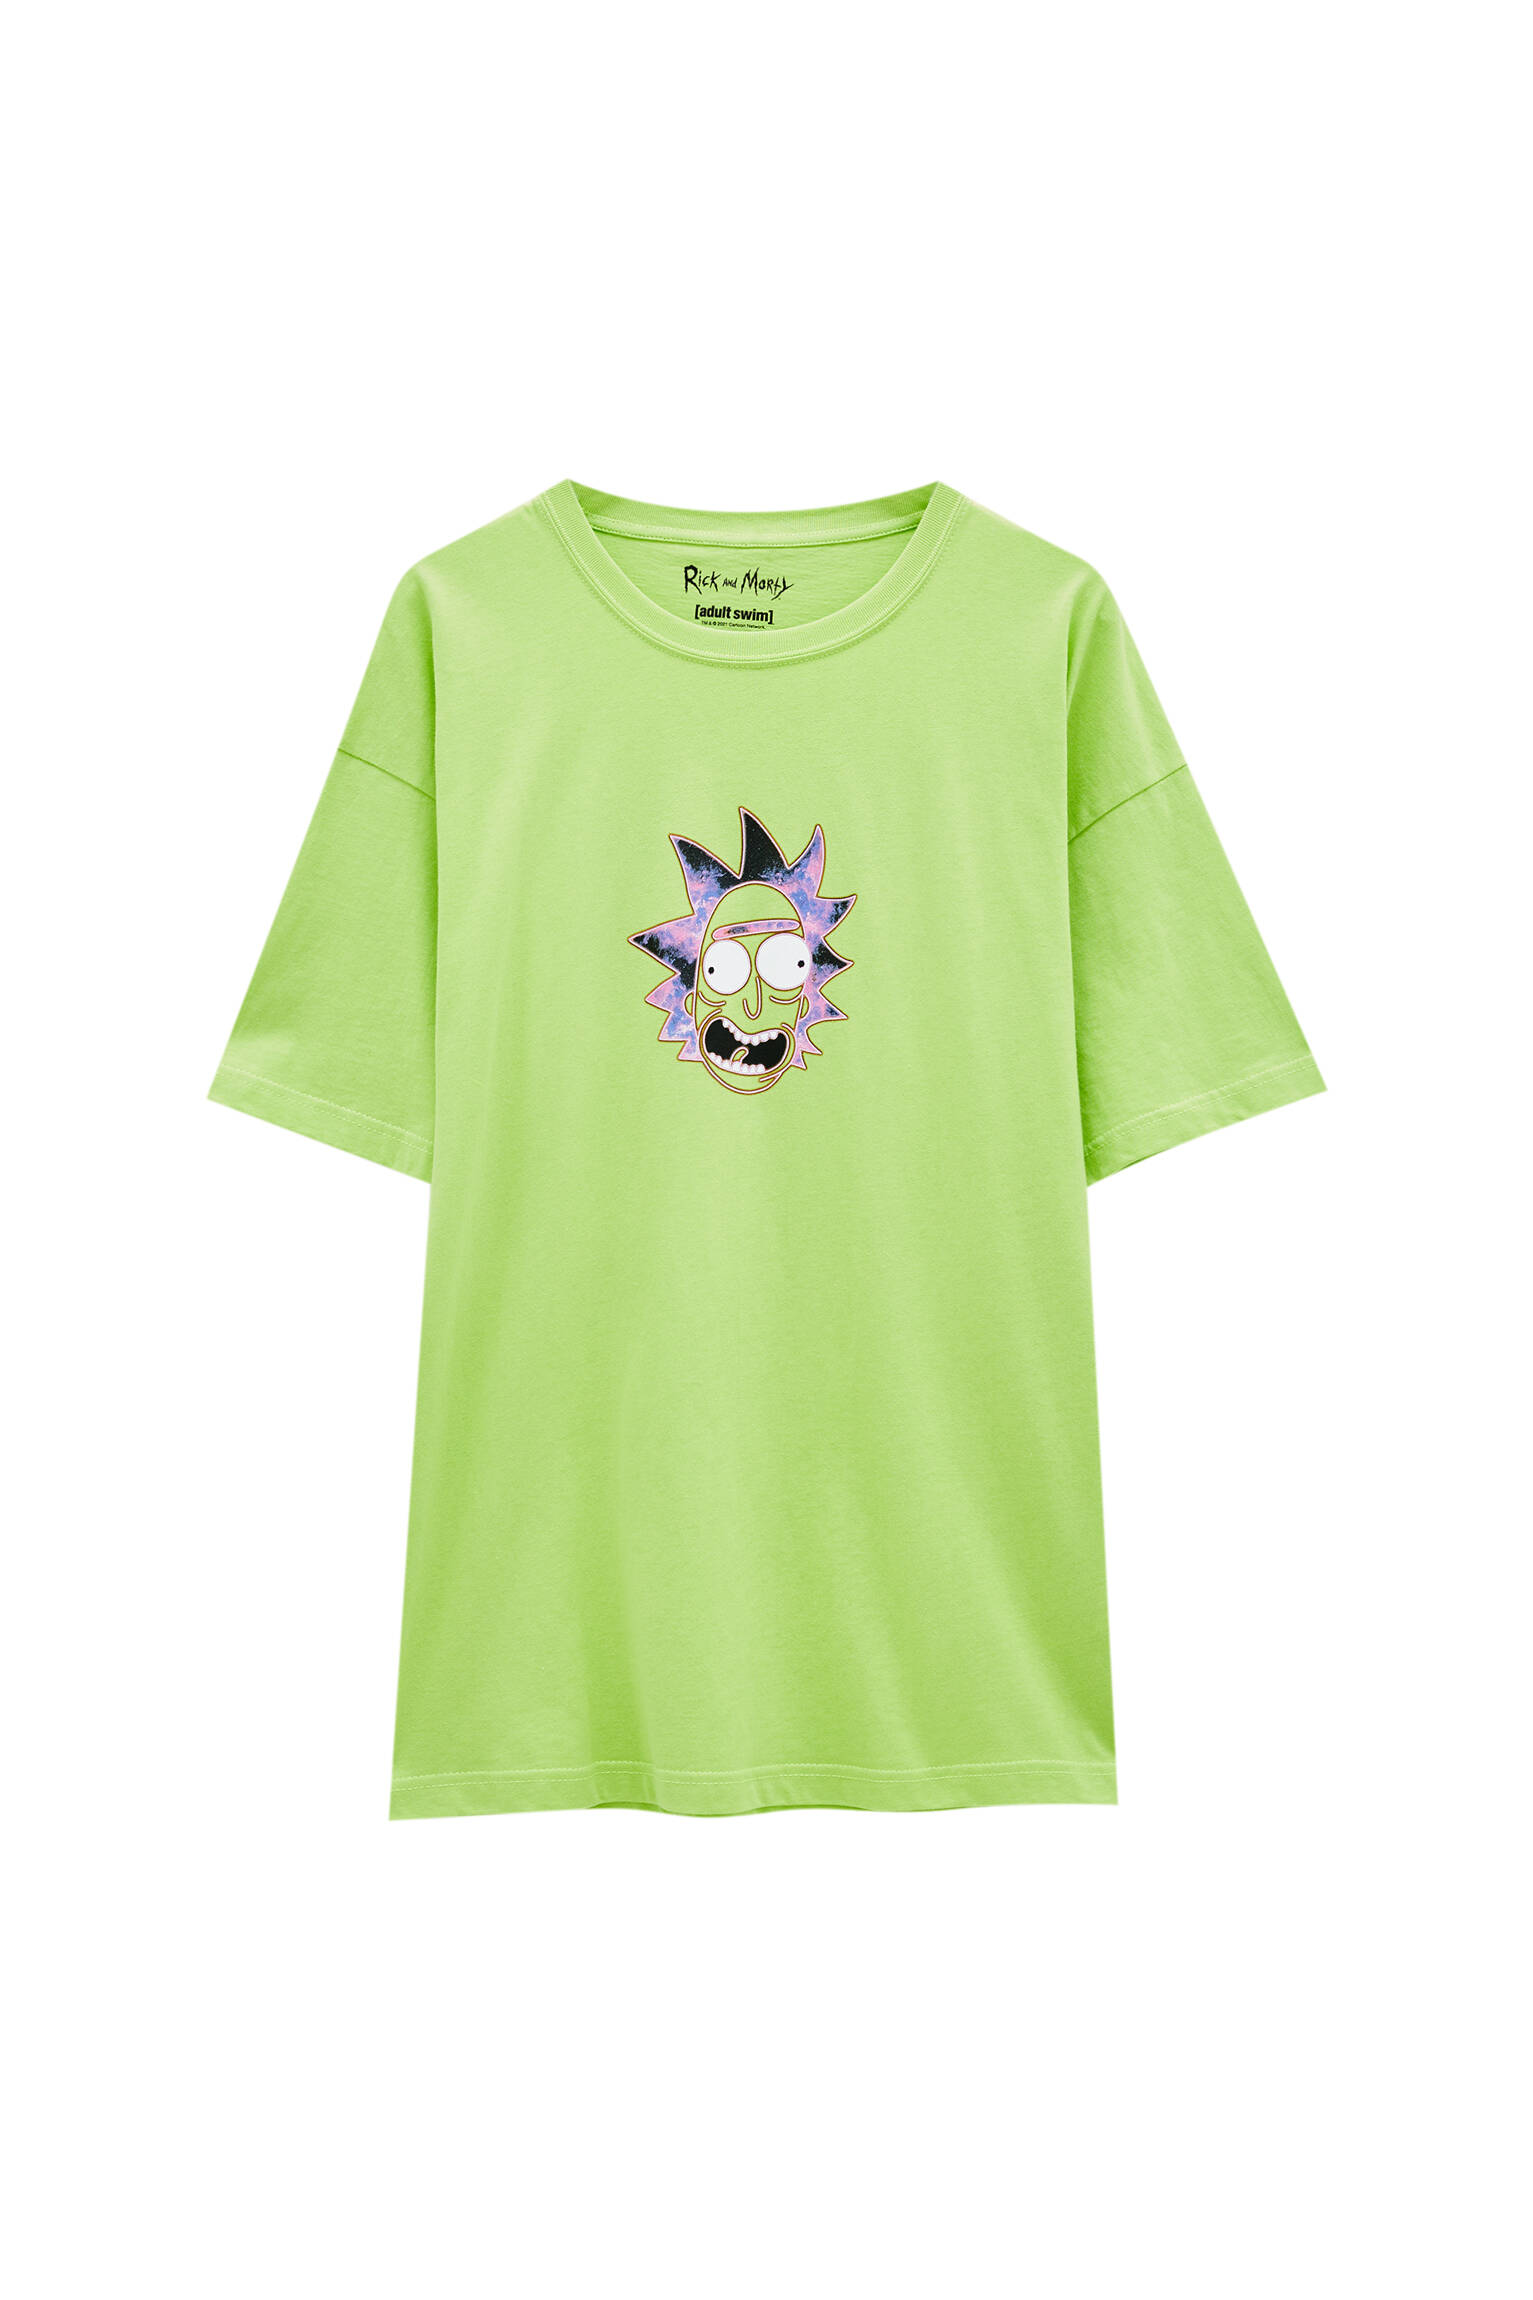 Зеленая футболка с контрастным принтом «Рик и Морти» ЗЕЛЕНЫЙ Pull & Bear